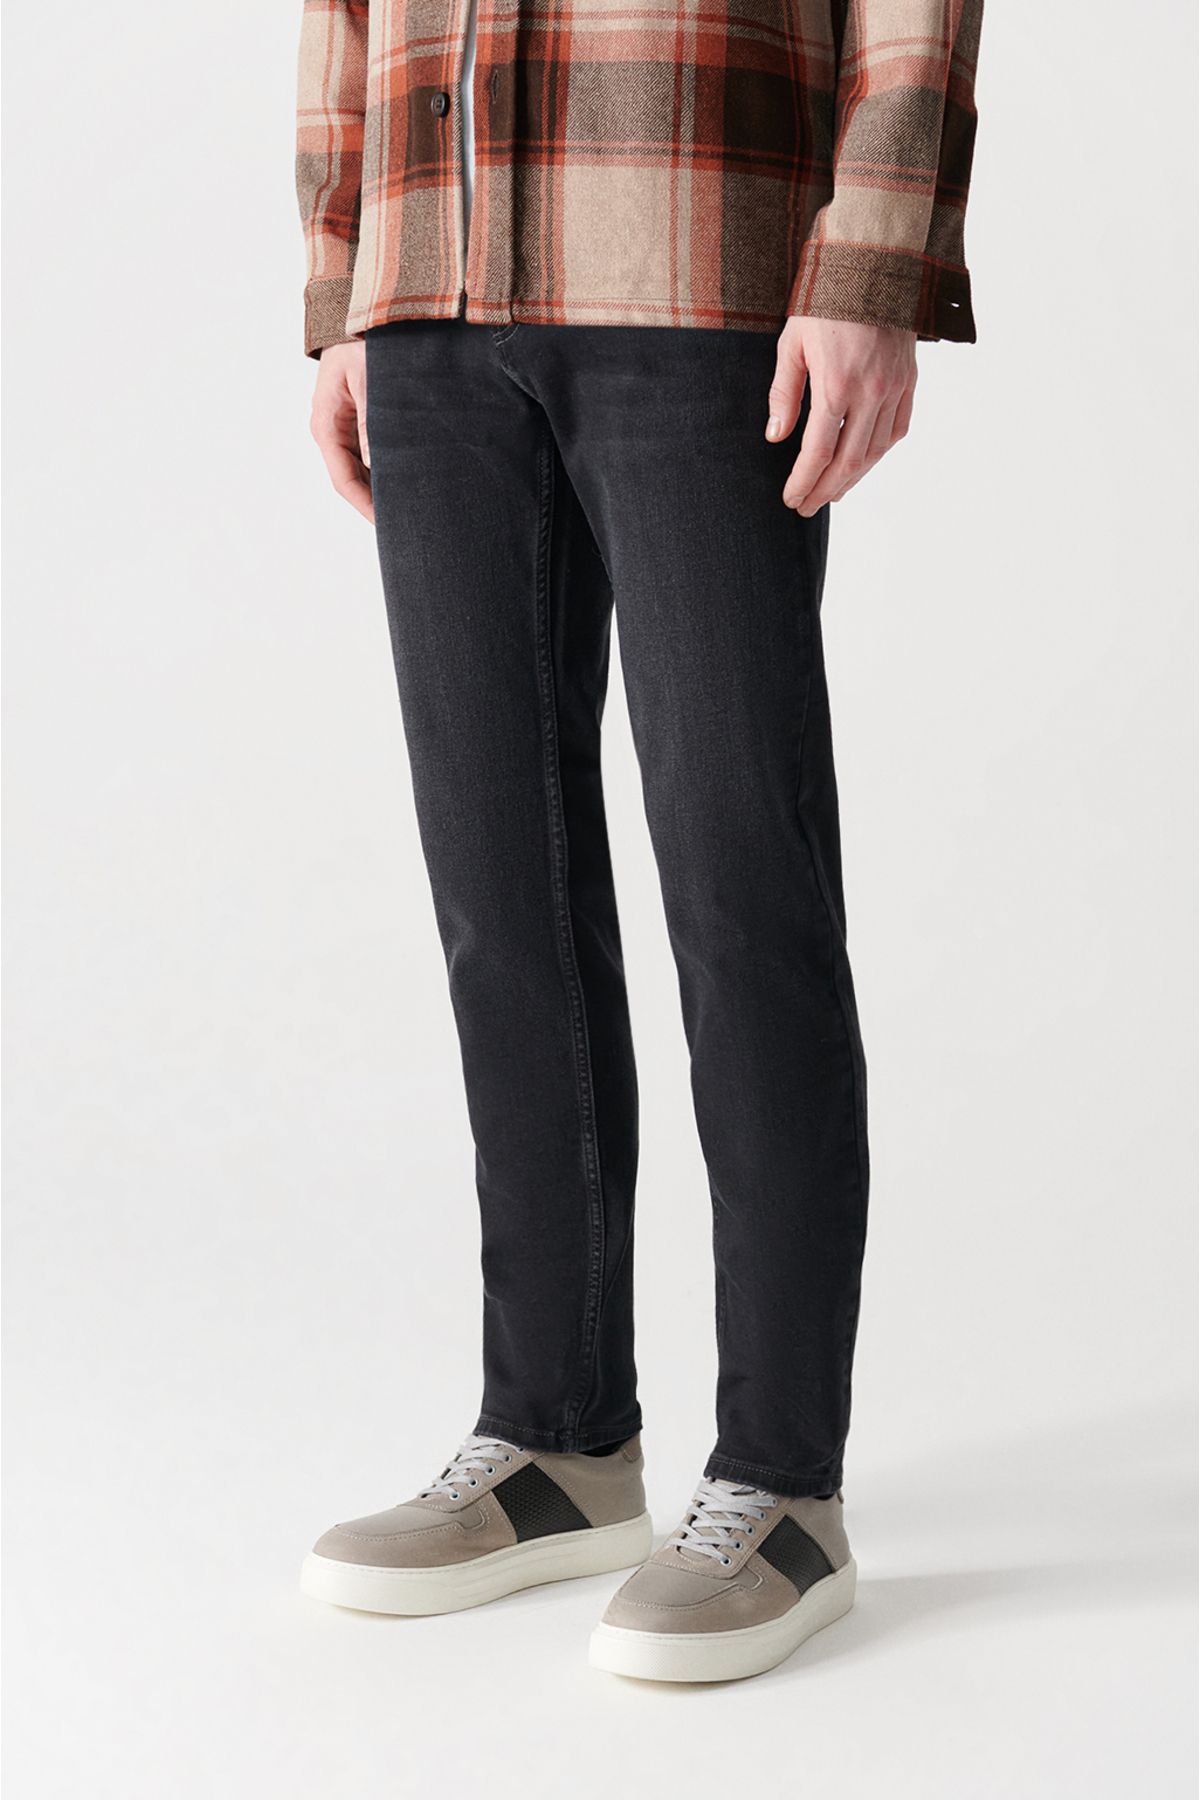 Avva شلوار جین مشکی سیاه و سفید مردانه A12Y3512